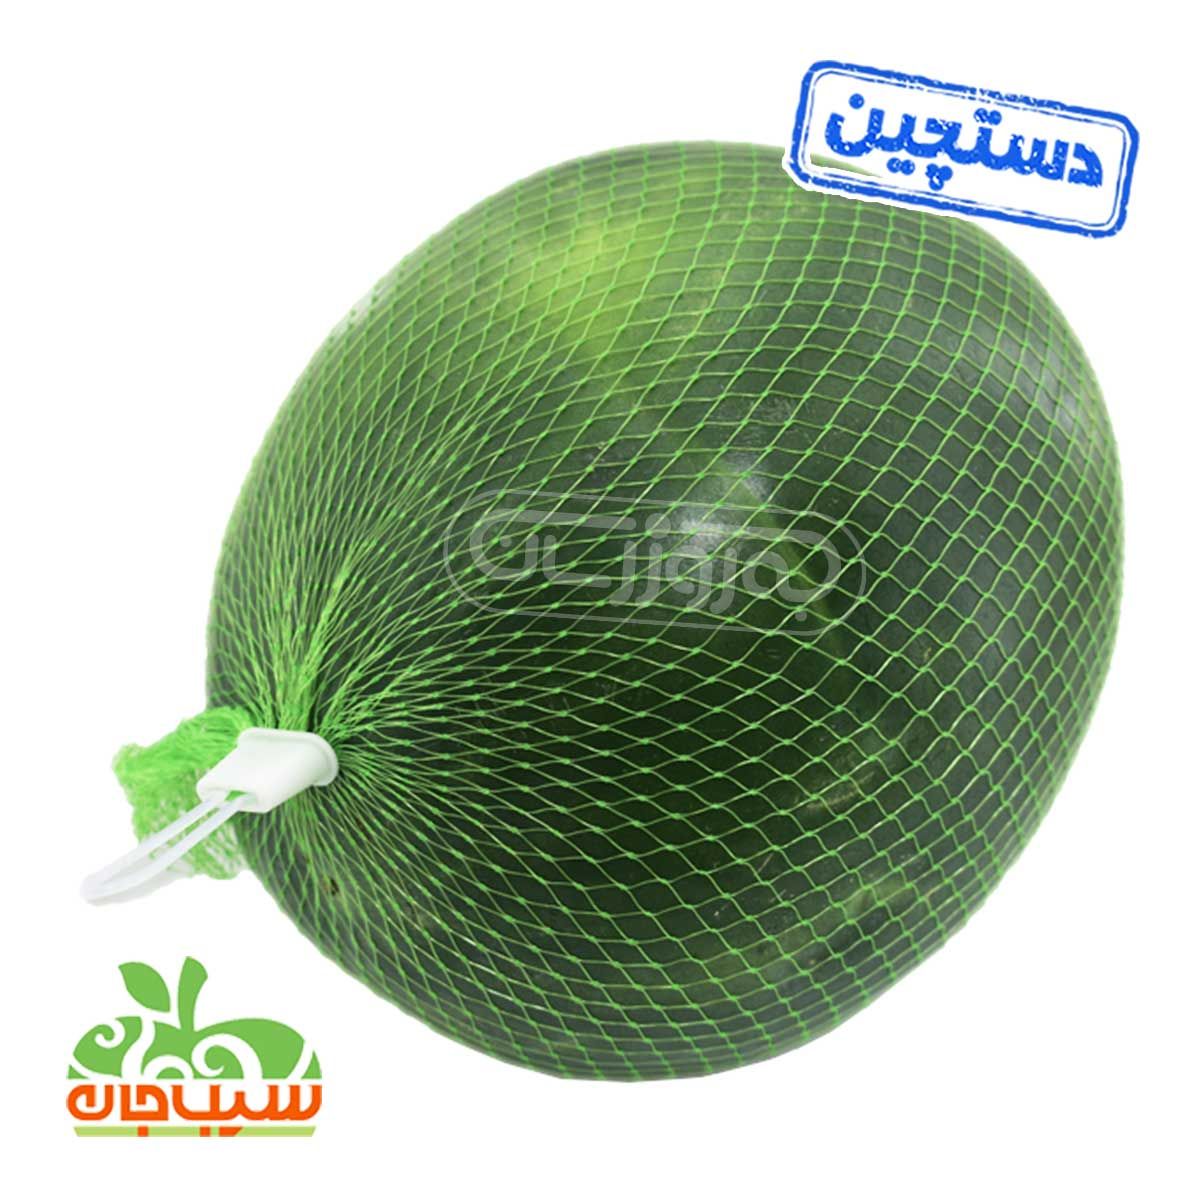 هندوانه محبوبی بزرگ دستچین سیب جان وزن حدود 9 تا 10 کیلوگرم